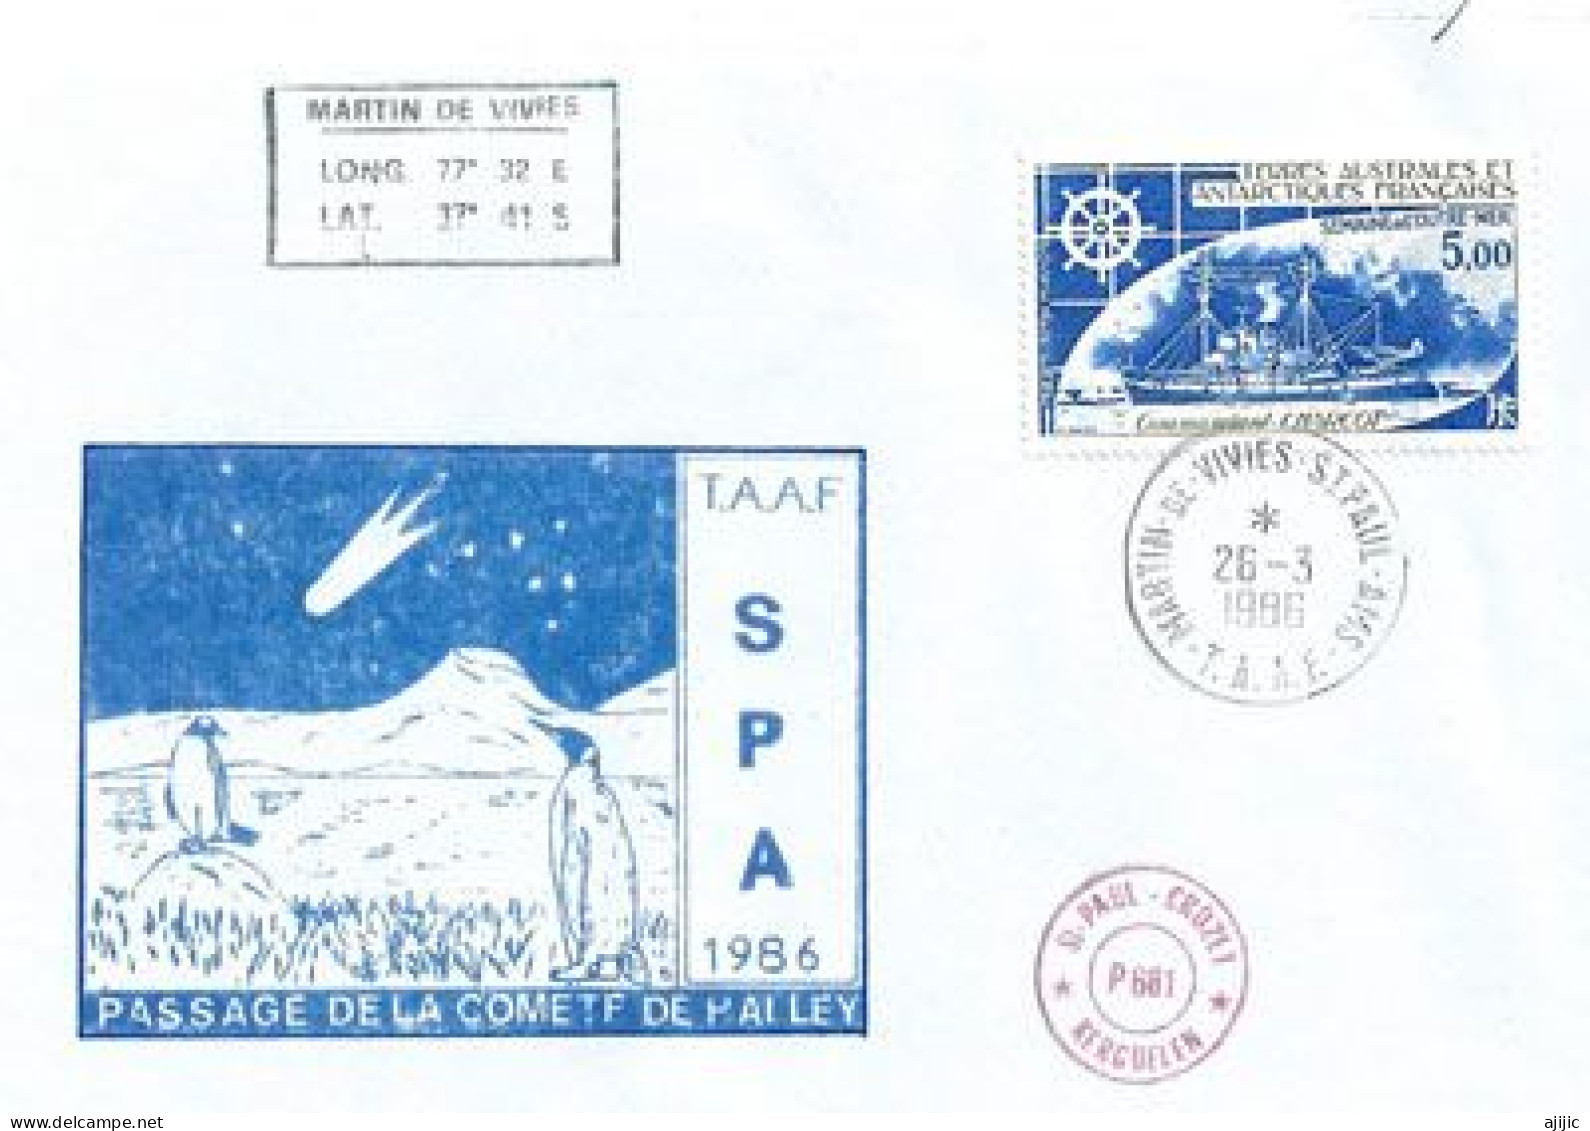 Passage De La Comête De Halley Aux îles Saint Paul Crozet & Kerguelen (Terres Australes)  Lettre 1986 (rare) - Oceania